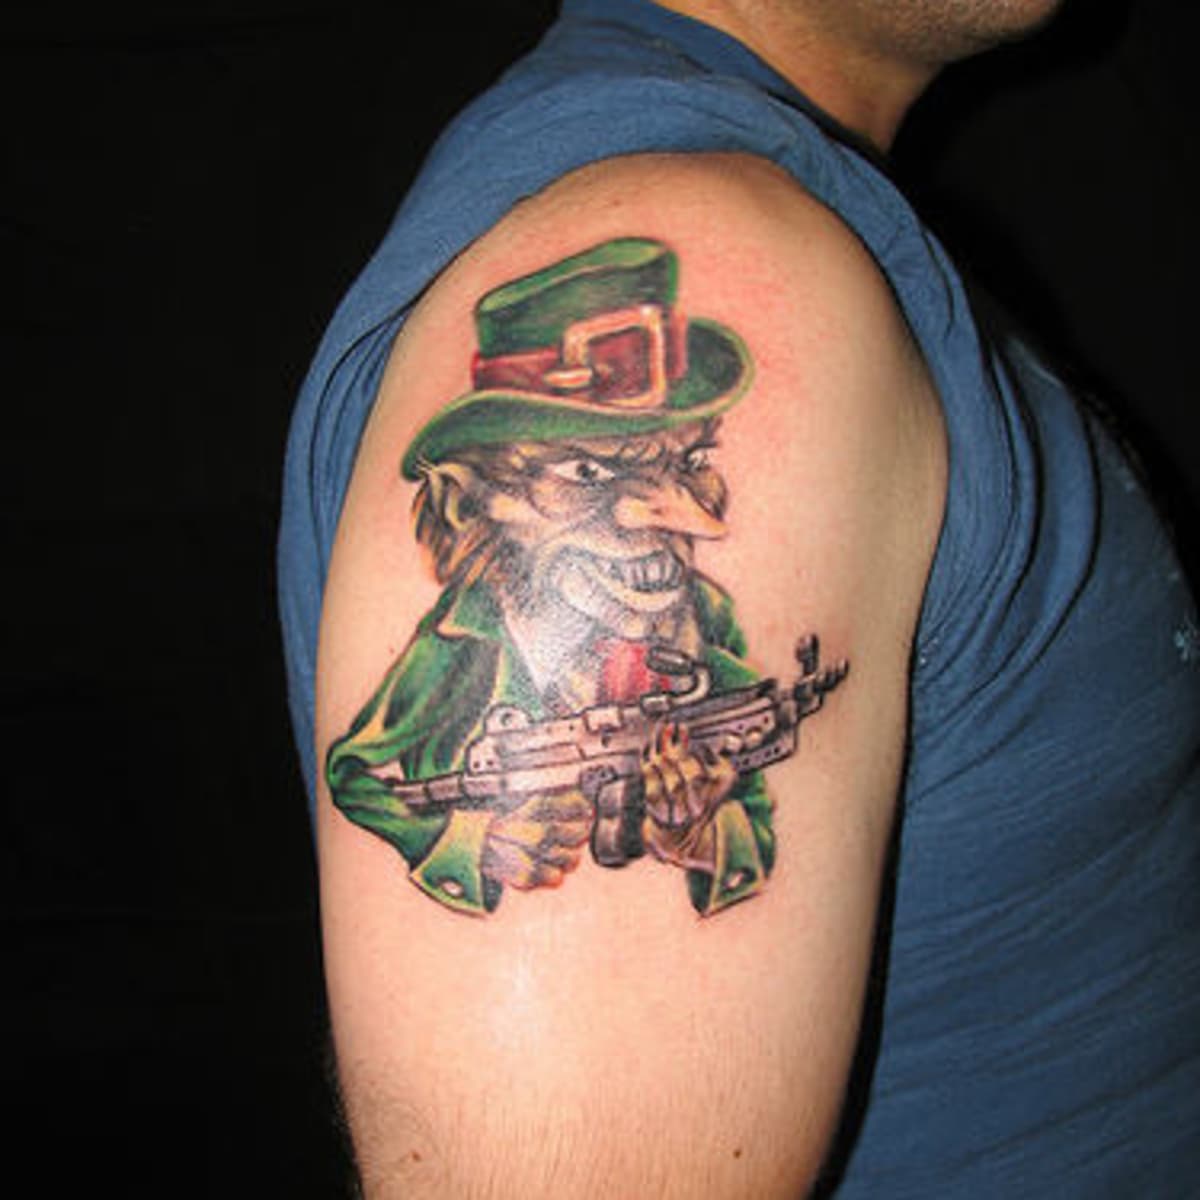 Man gets Fighting Irish tattoo on head